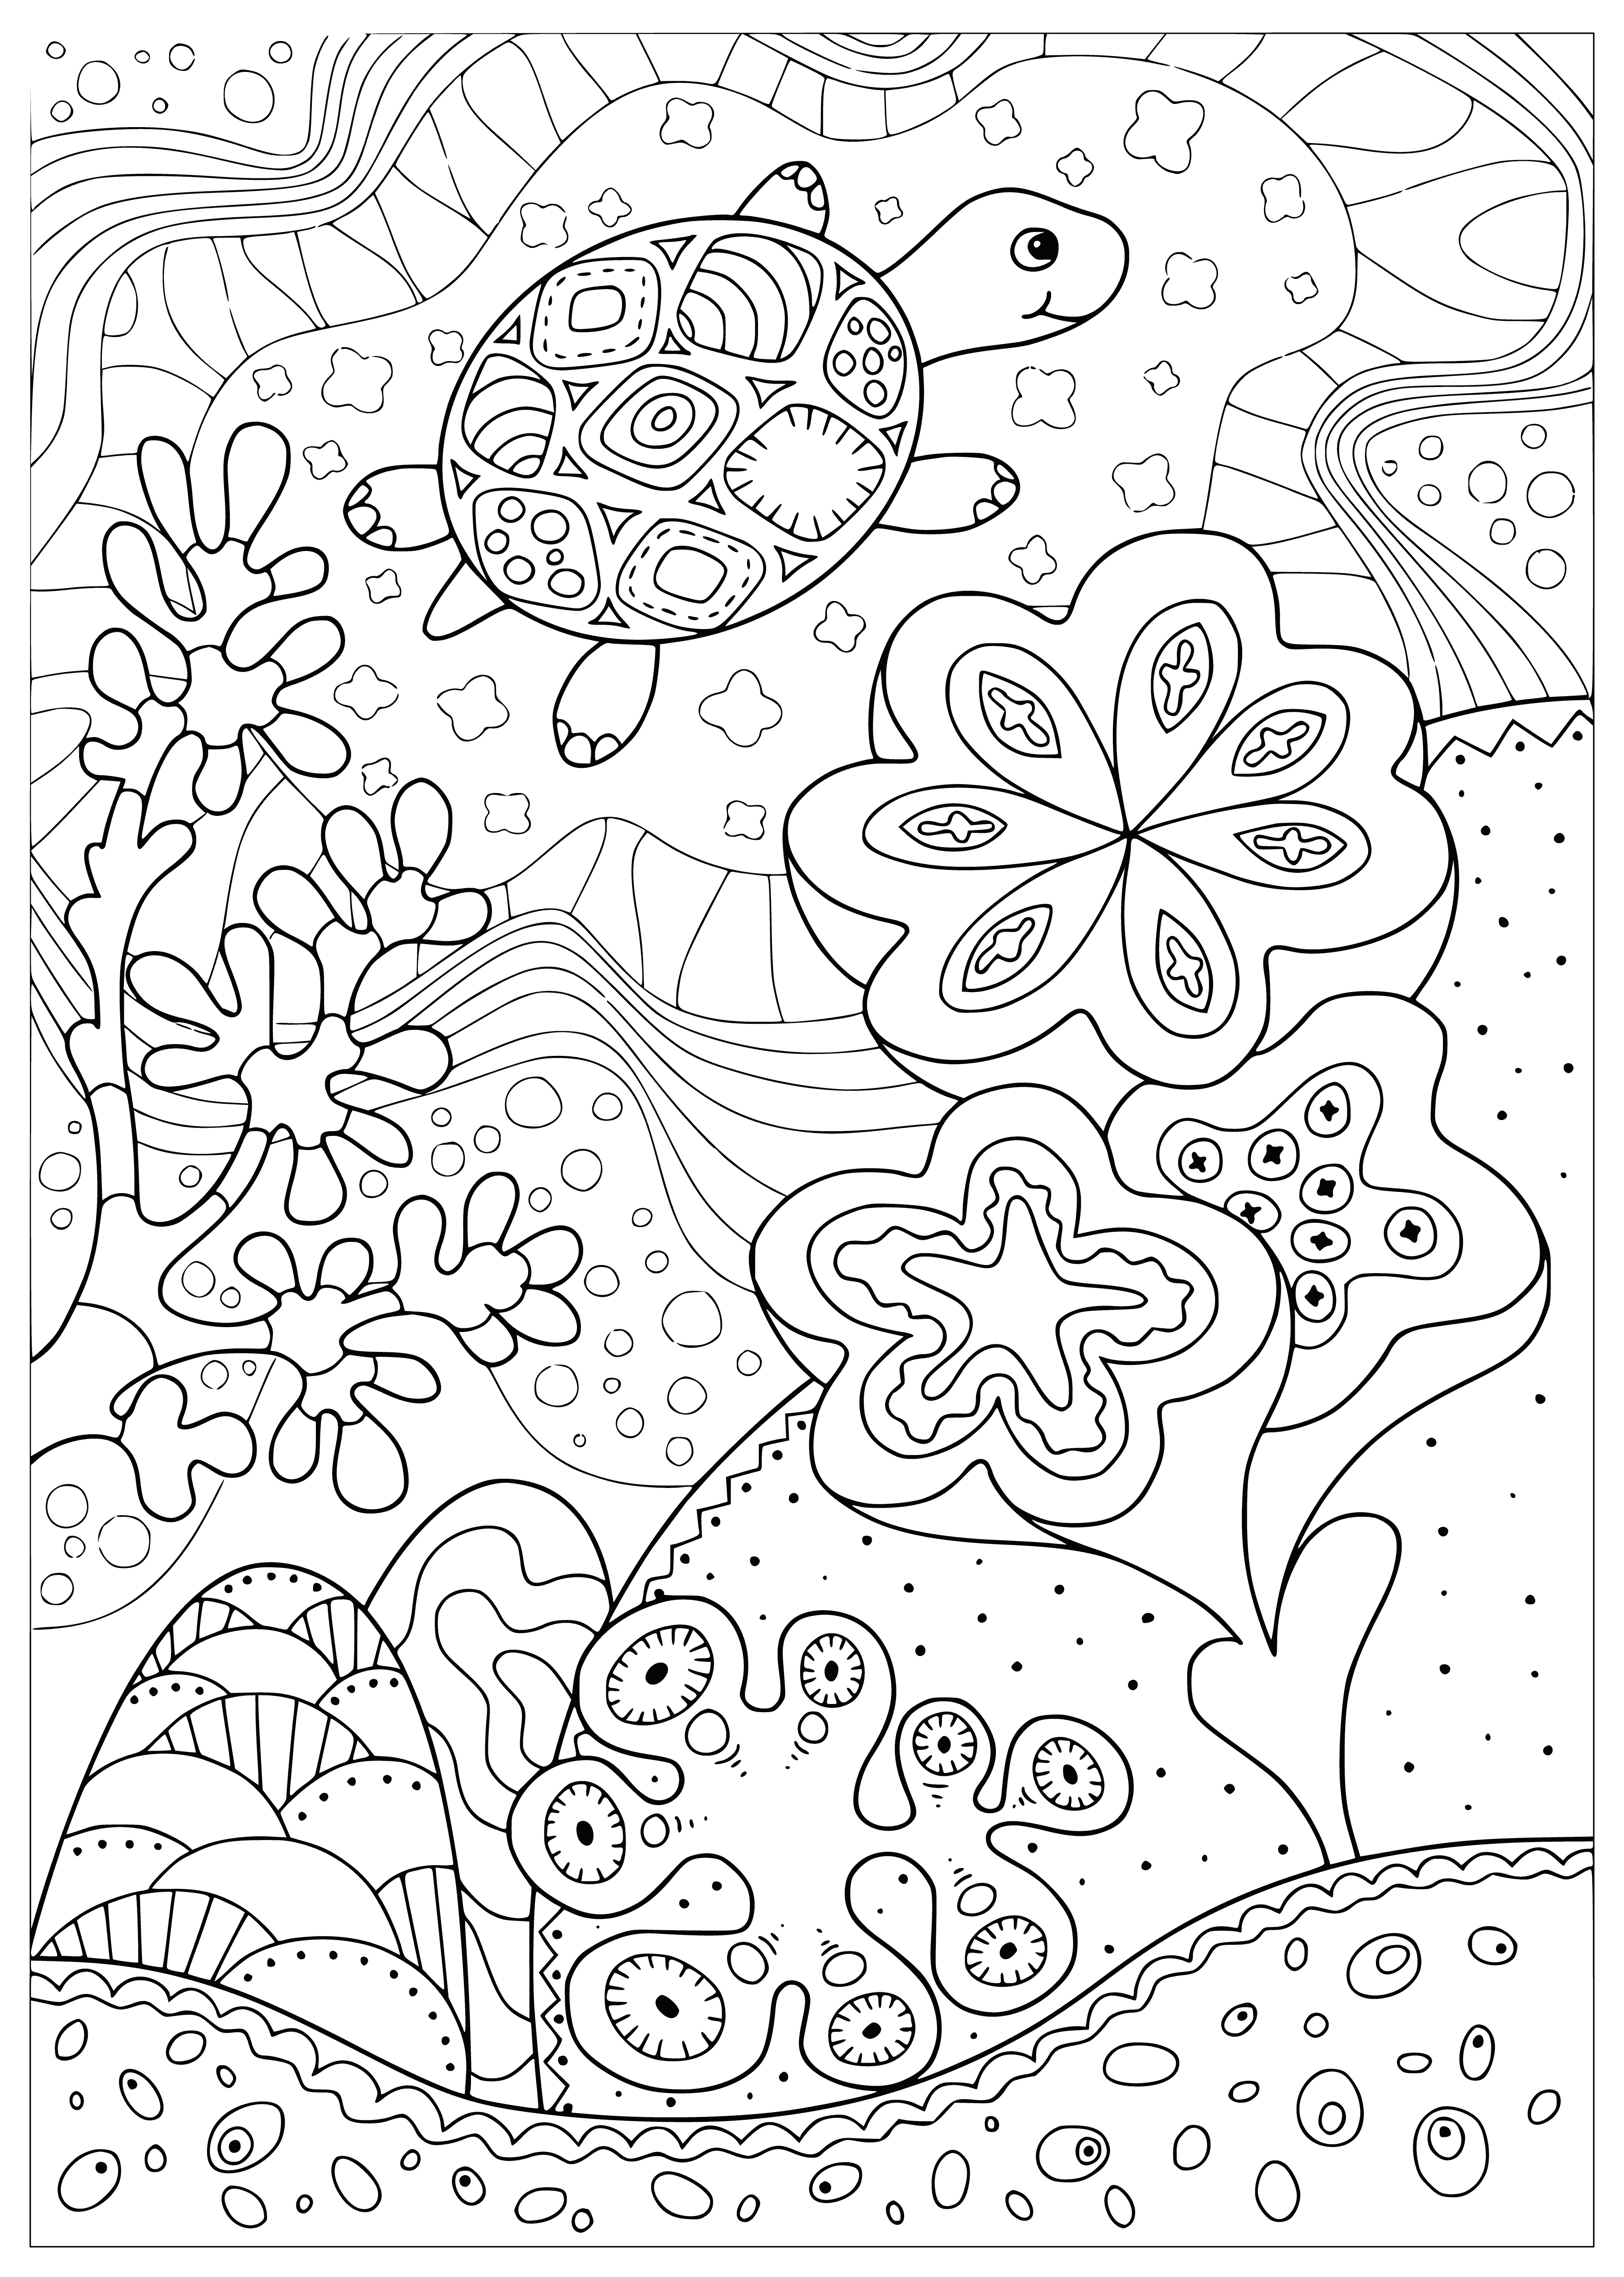 Tartaruga em um recife de coral página para colorir